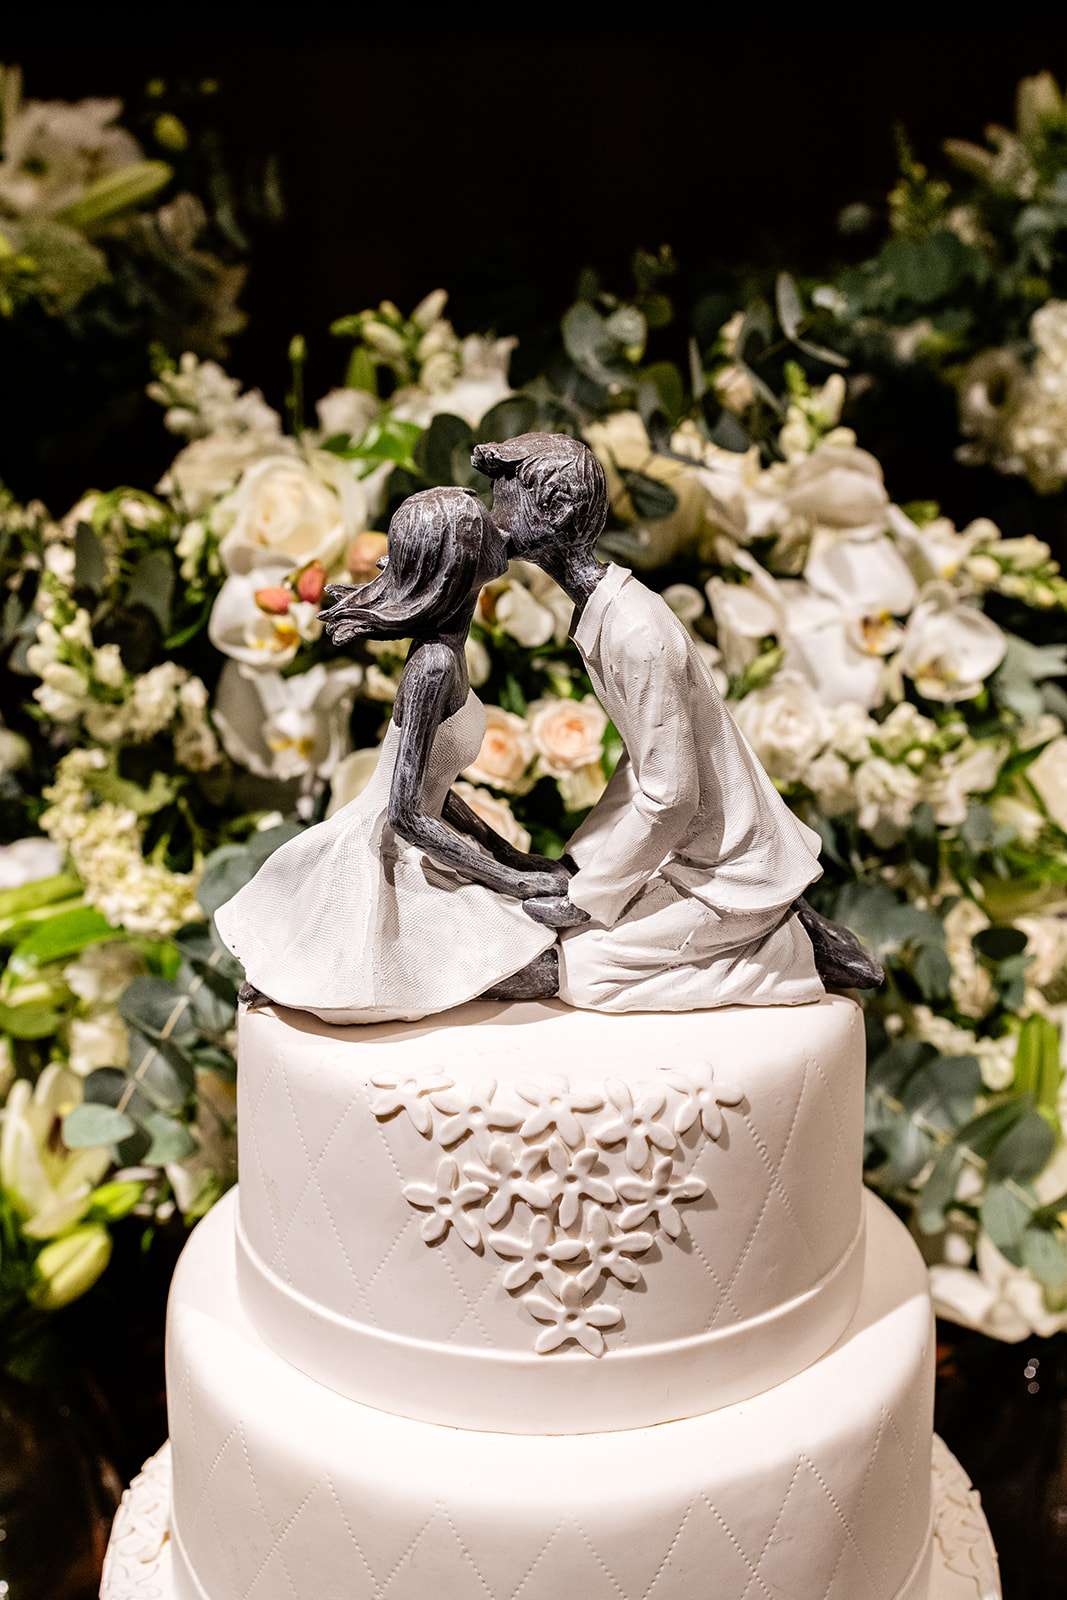 Topo do bolo para casamento com bonecos vestidos de noivos | Foto: Anna Quast e Ricky Arruda